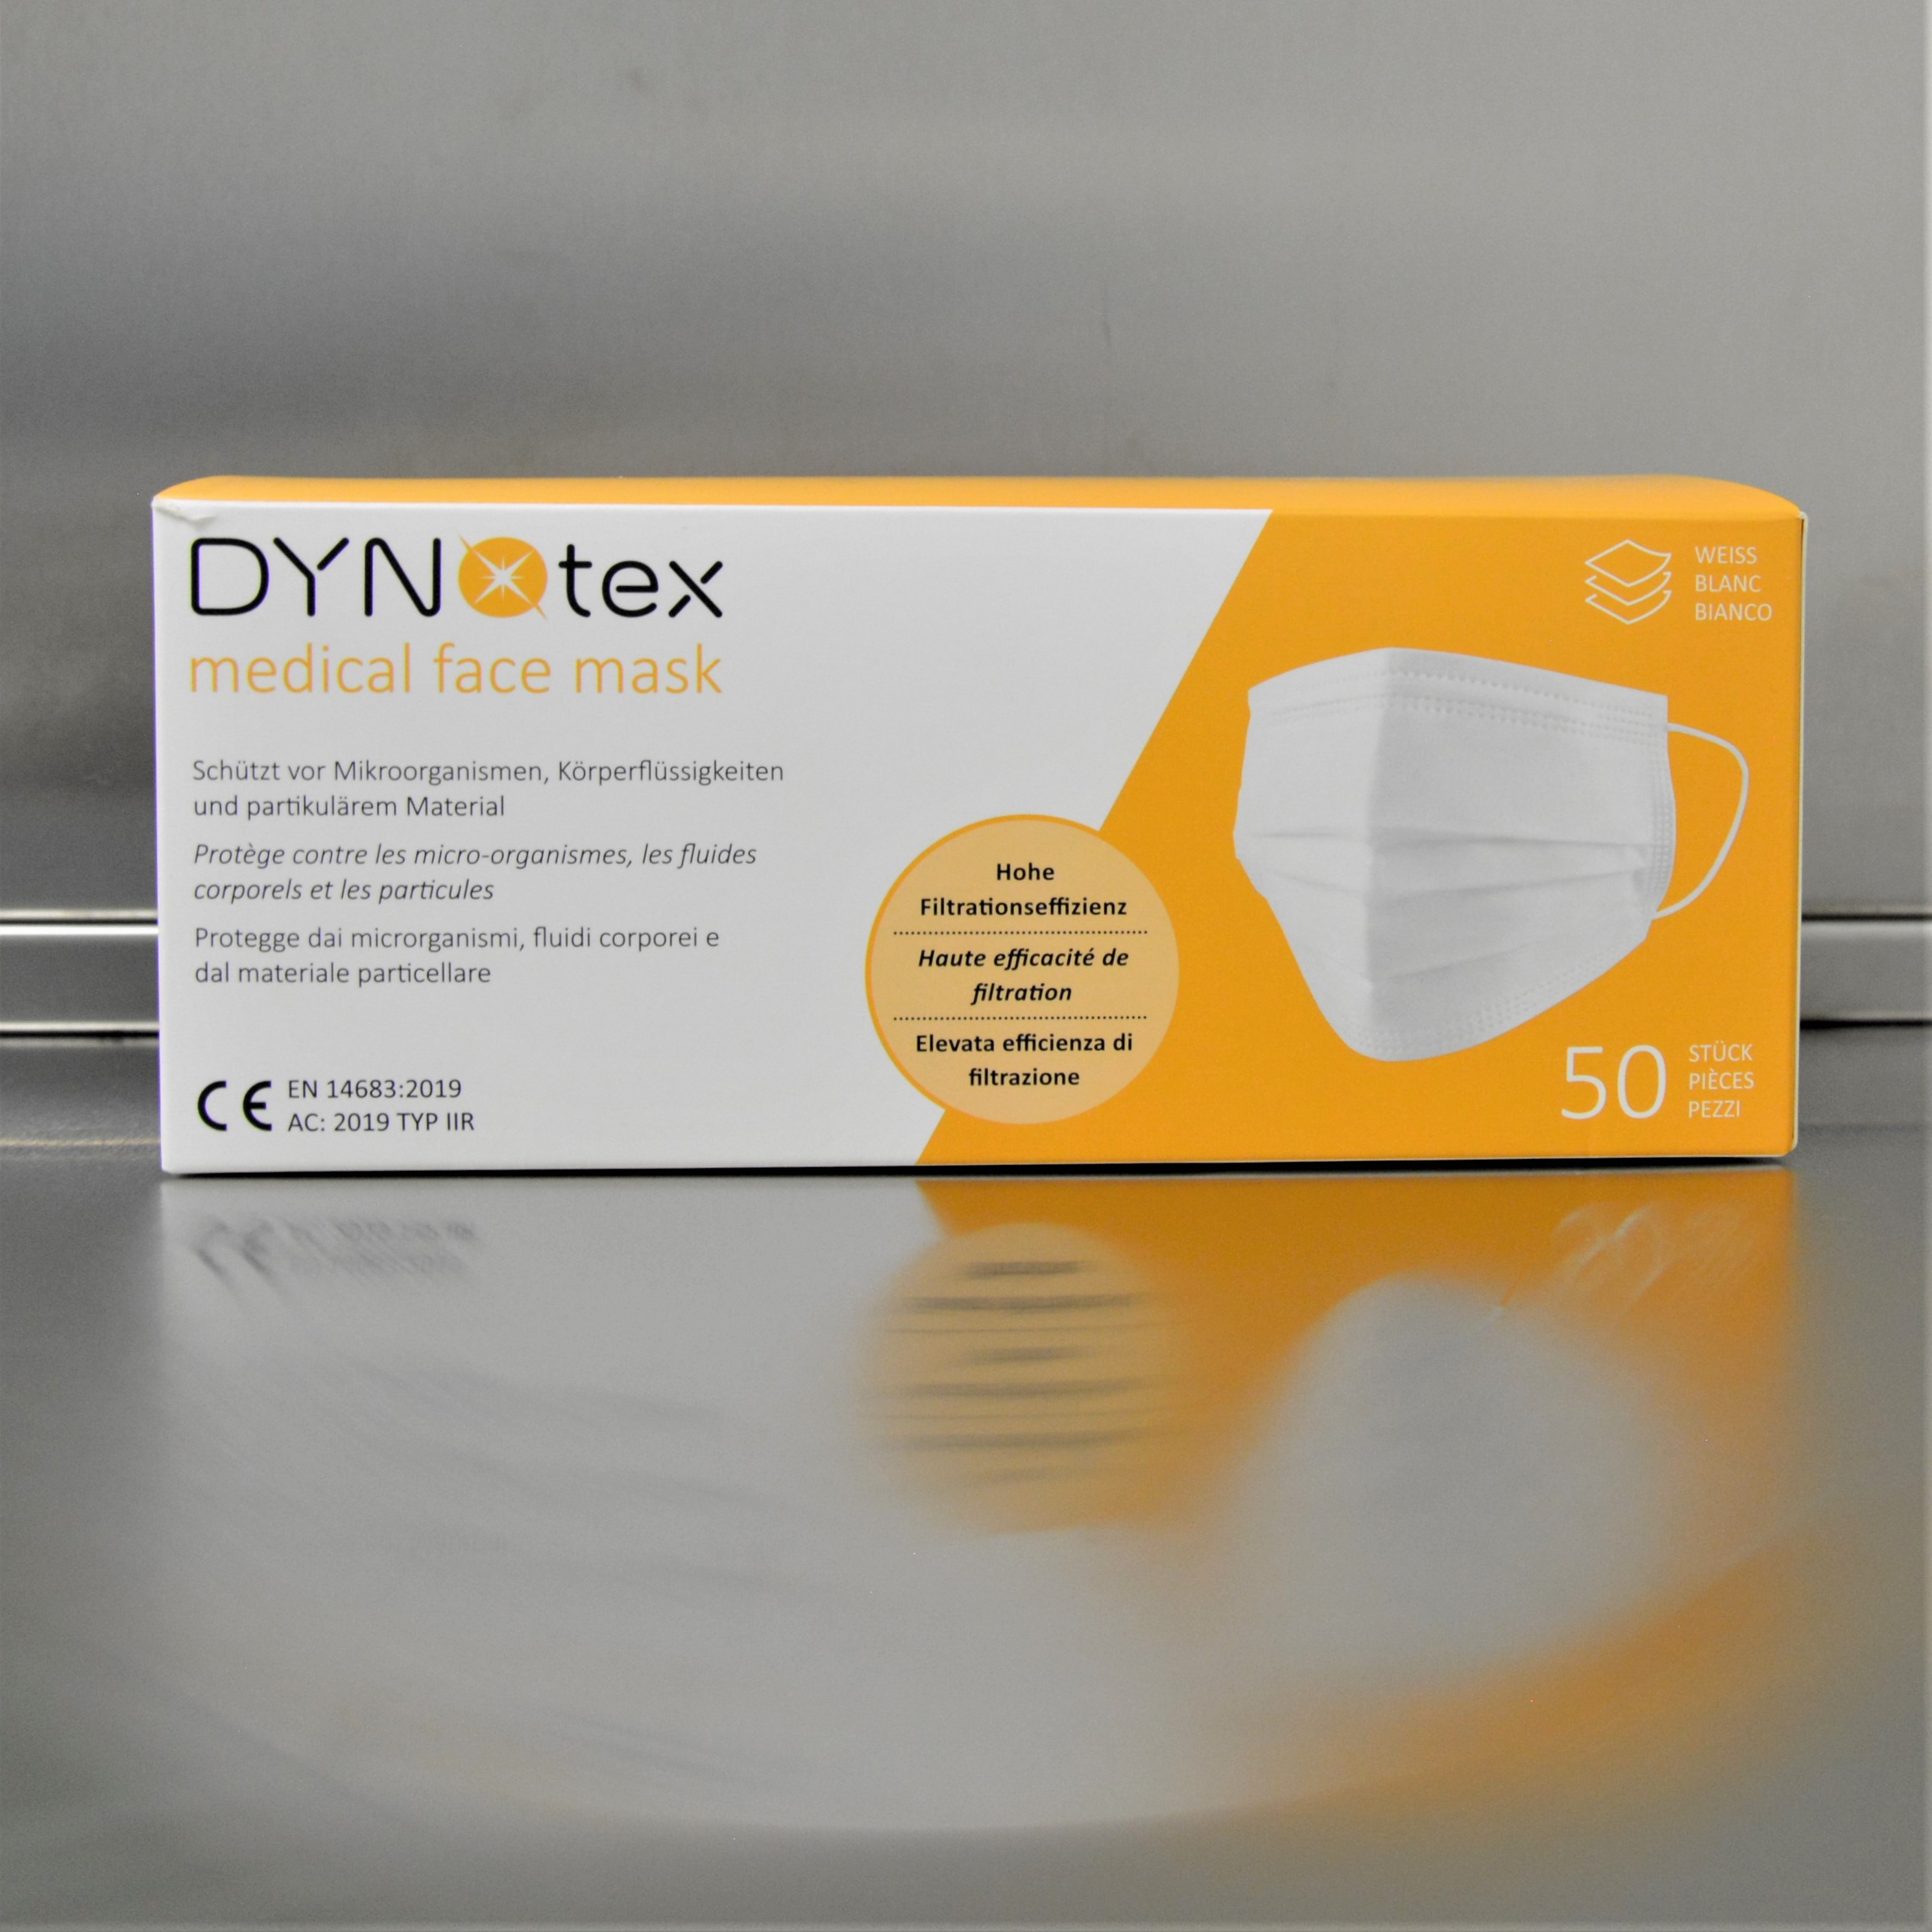 DYNOtex faceMask ear-18Masken verpackt in einer orange-weissen Schachtel.